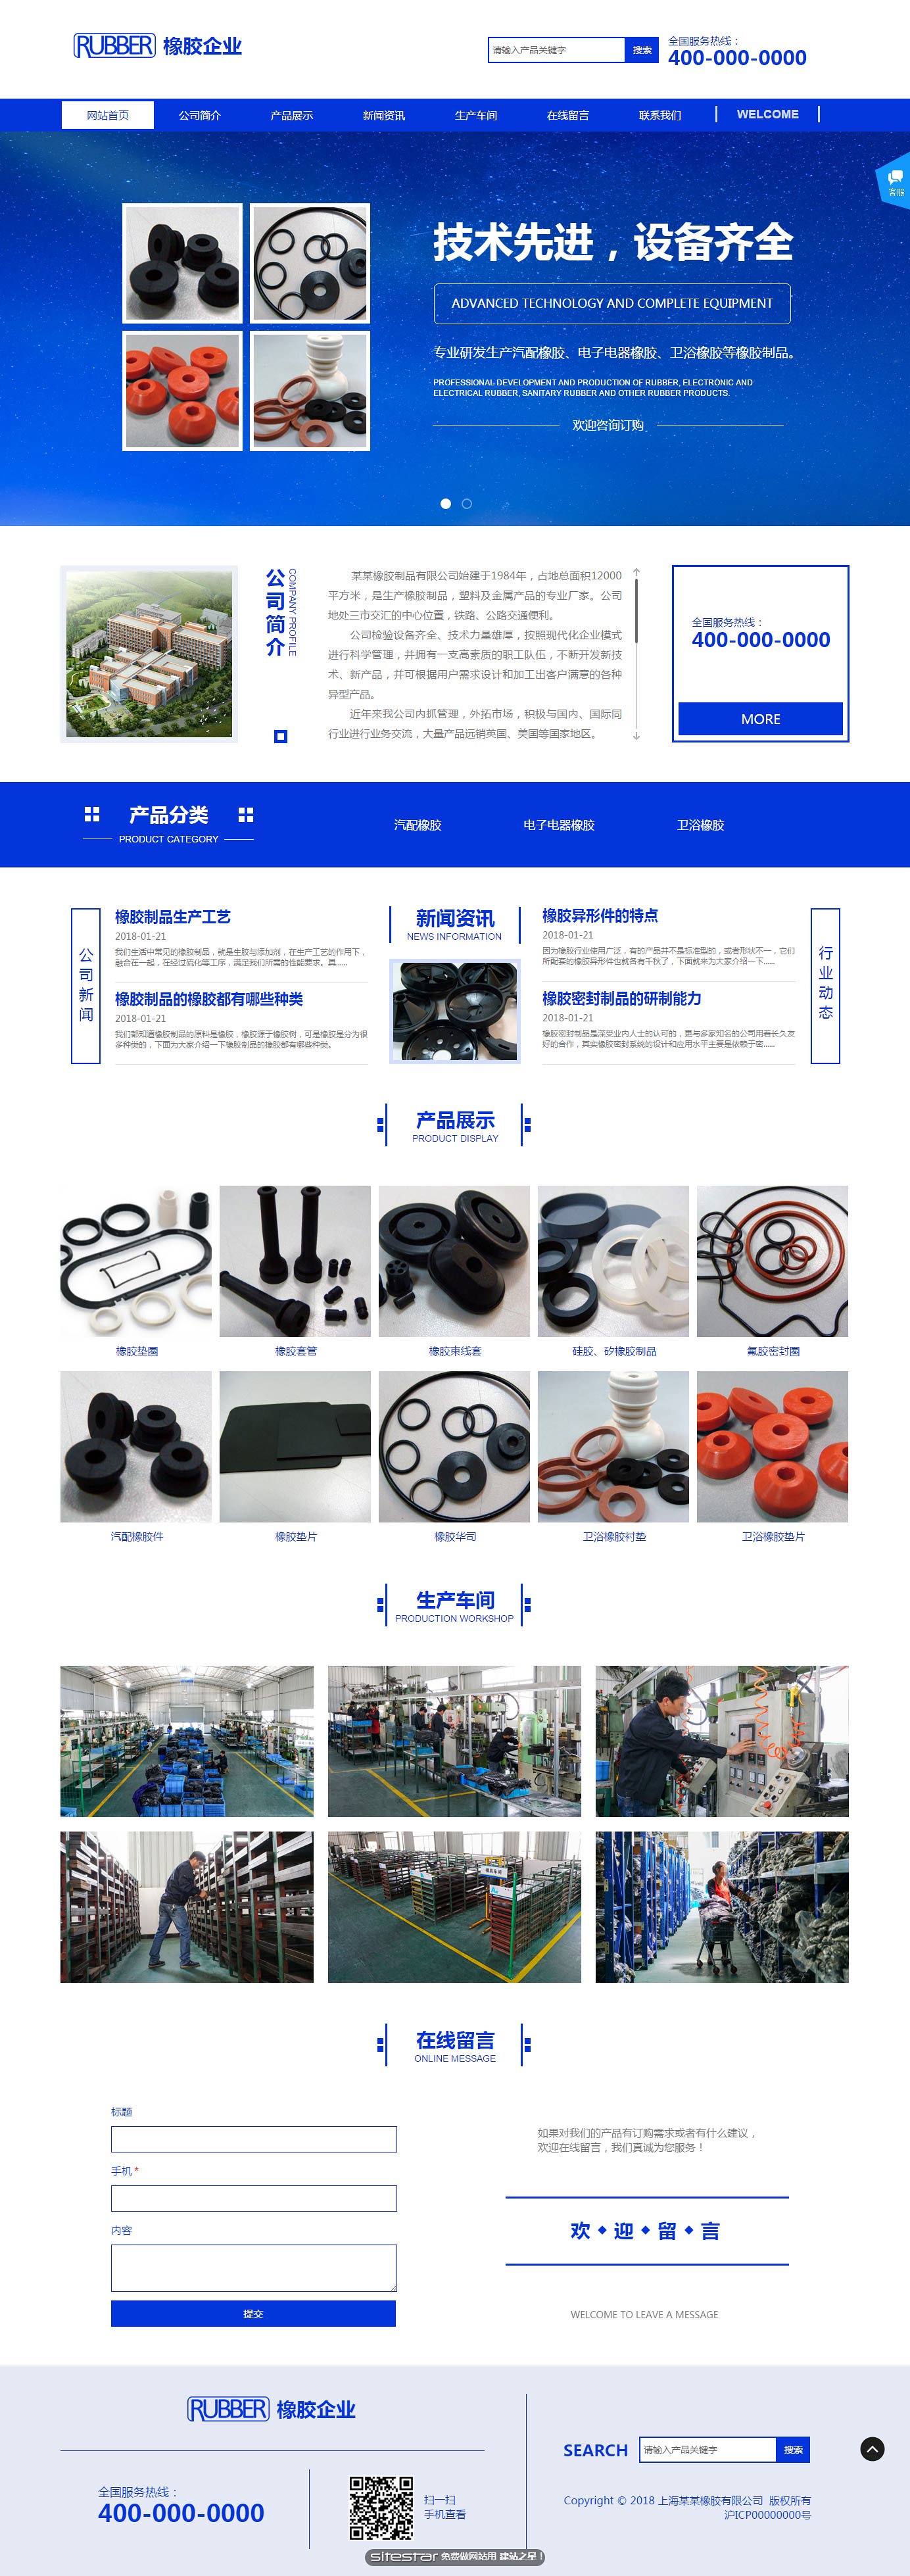 企业网站精美模板-rubber-1041590